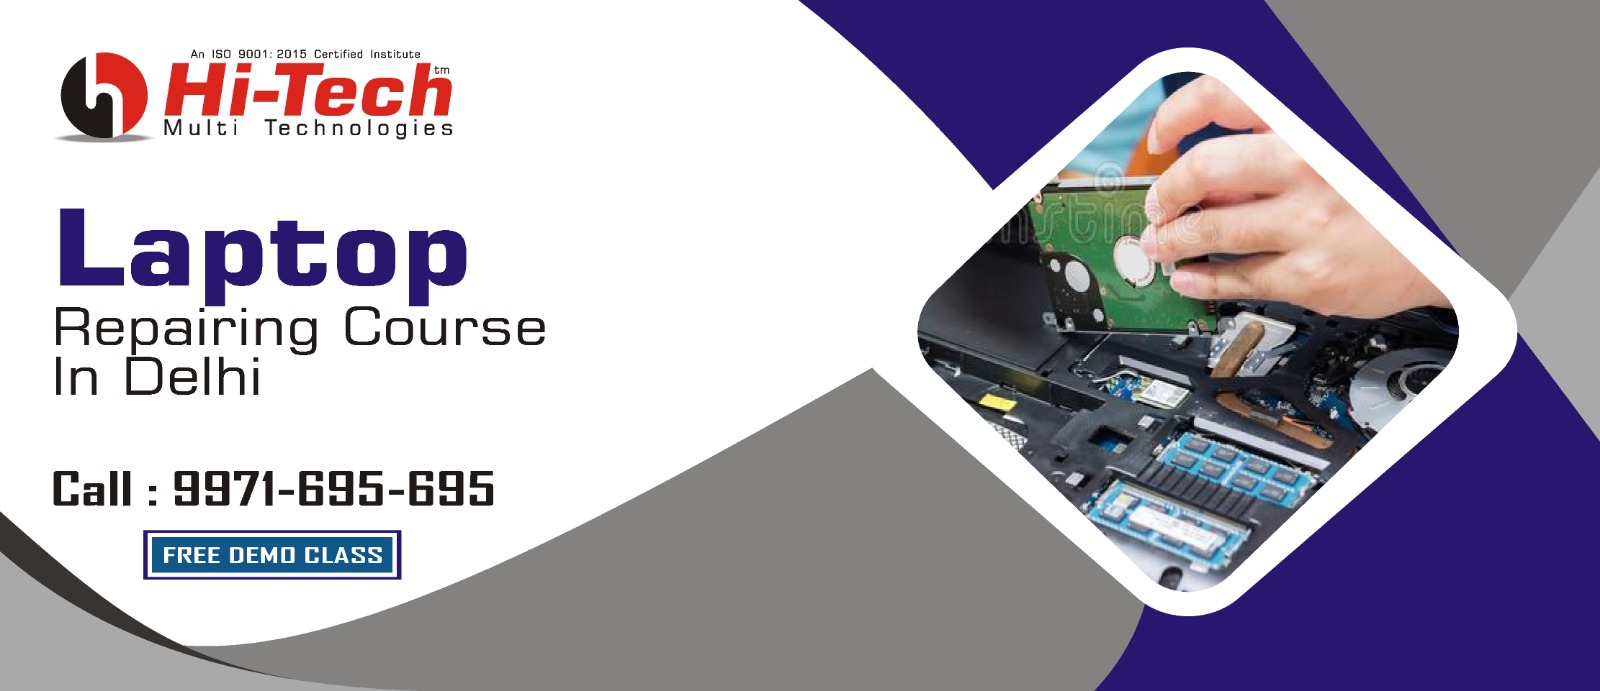 Laptops repairing course in Delhi | Call Us:  (+91) : 981-0871-854